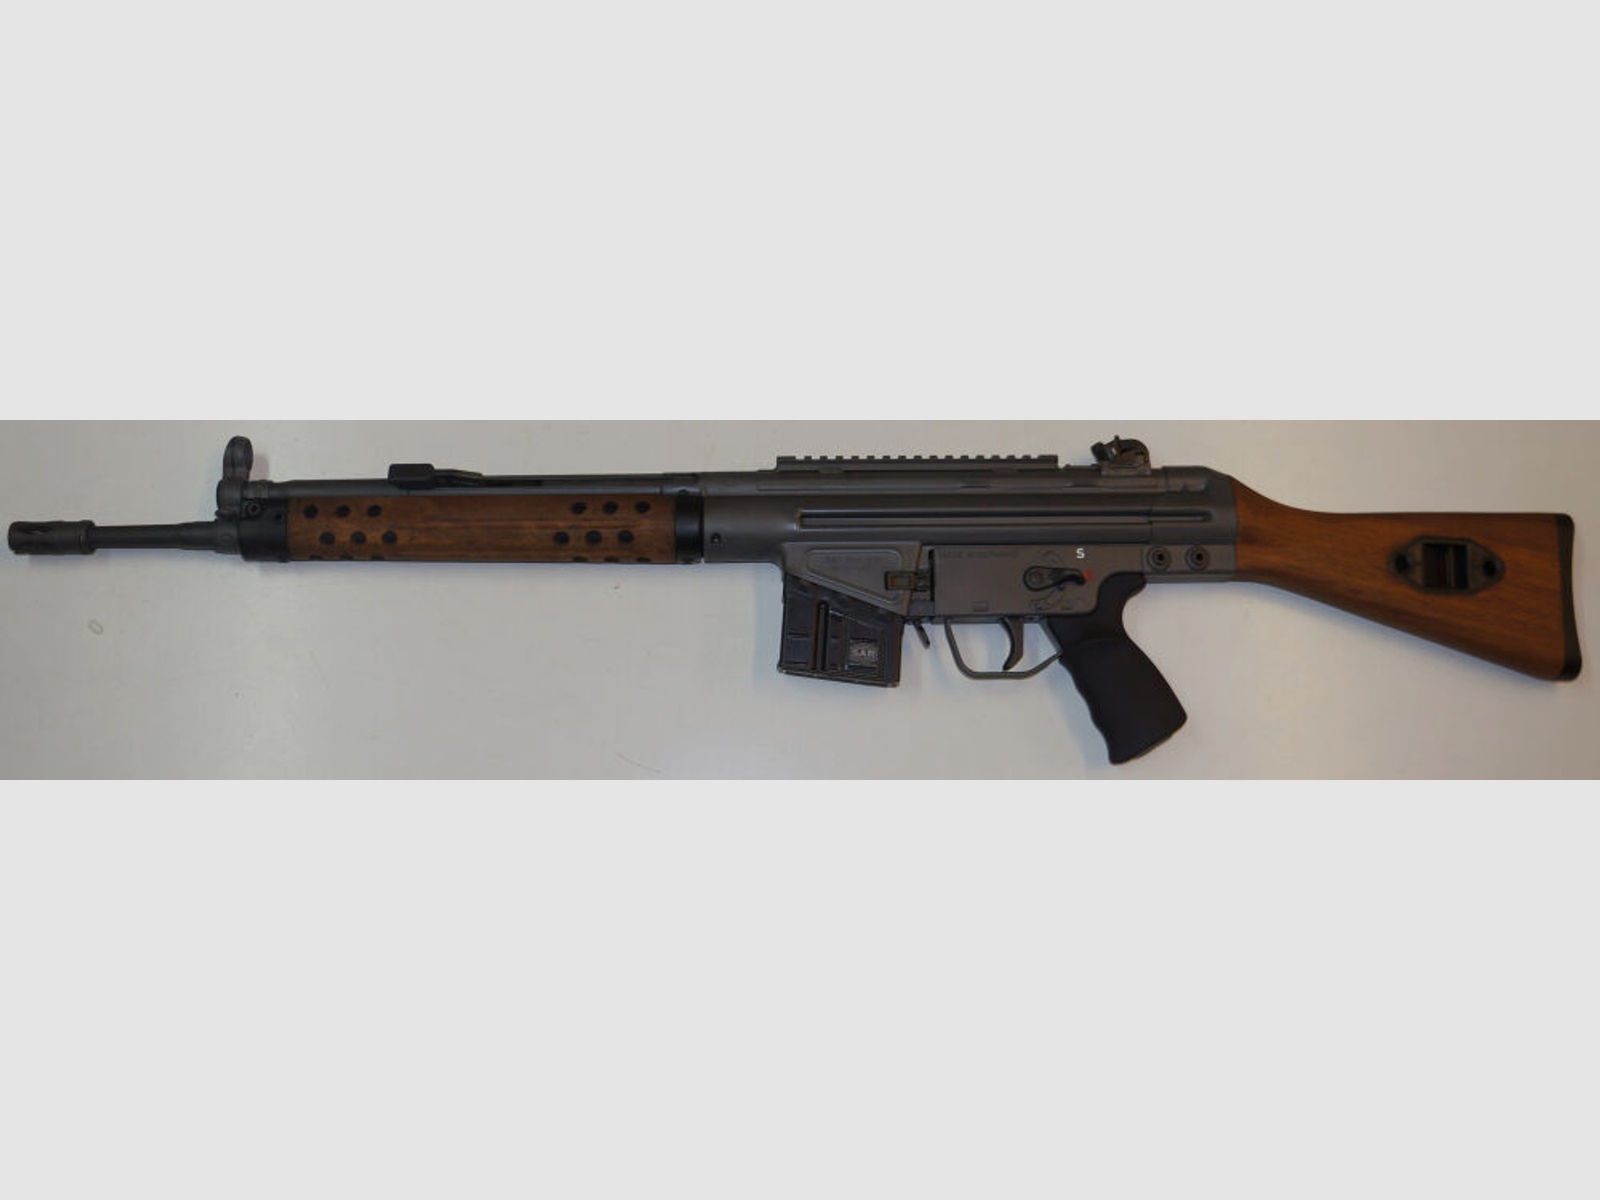 Schwaben Arms GmbH	 SAR M41 Picatinnyschiene 180mm Lang, blank mit Ausfräsung passend für MP5,G3,HK33